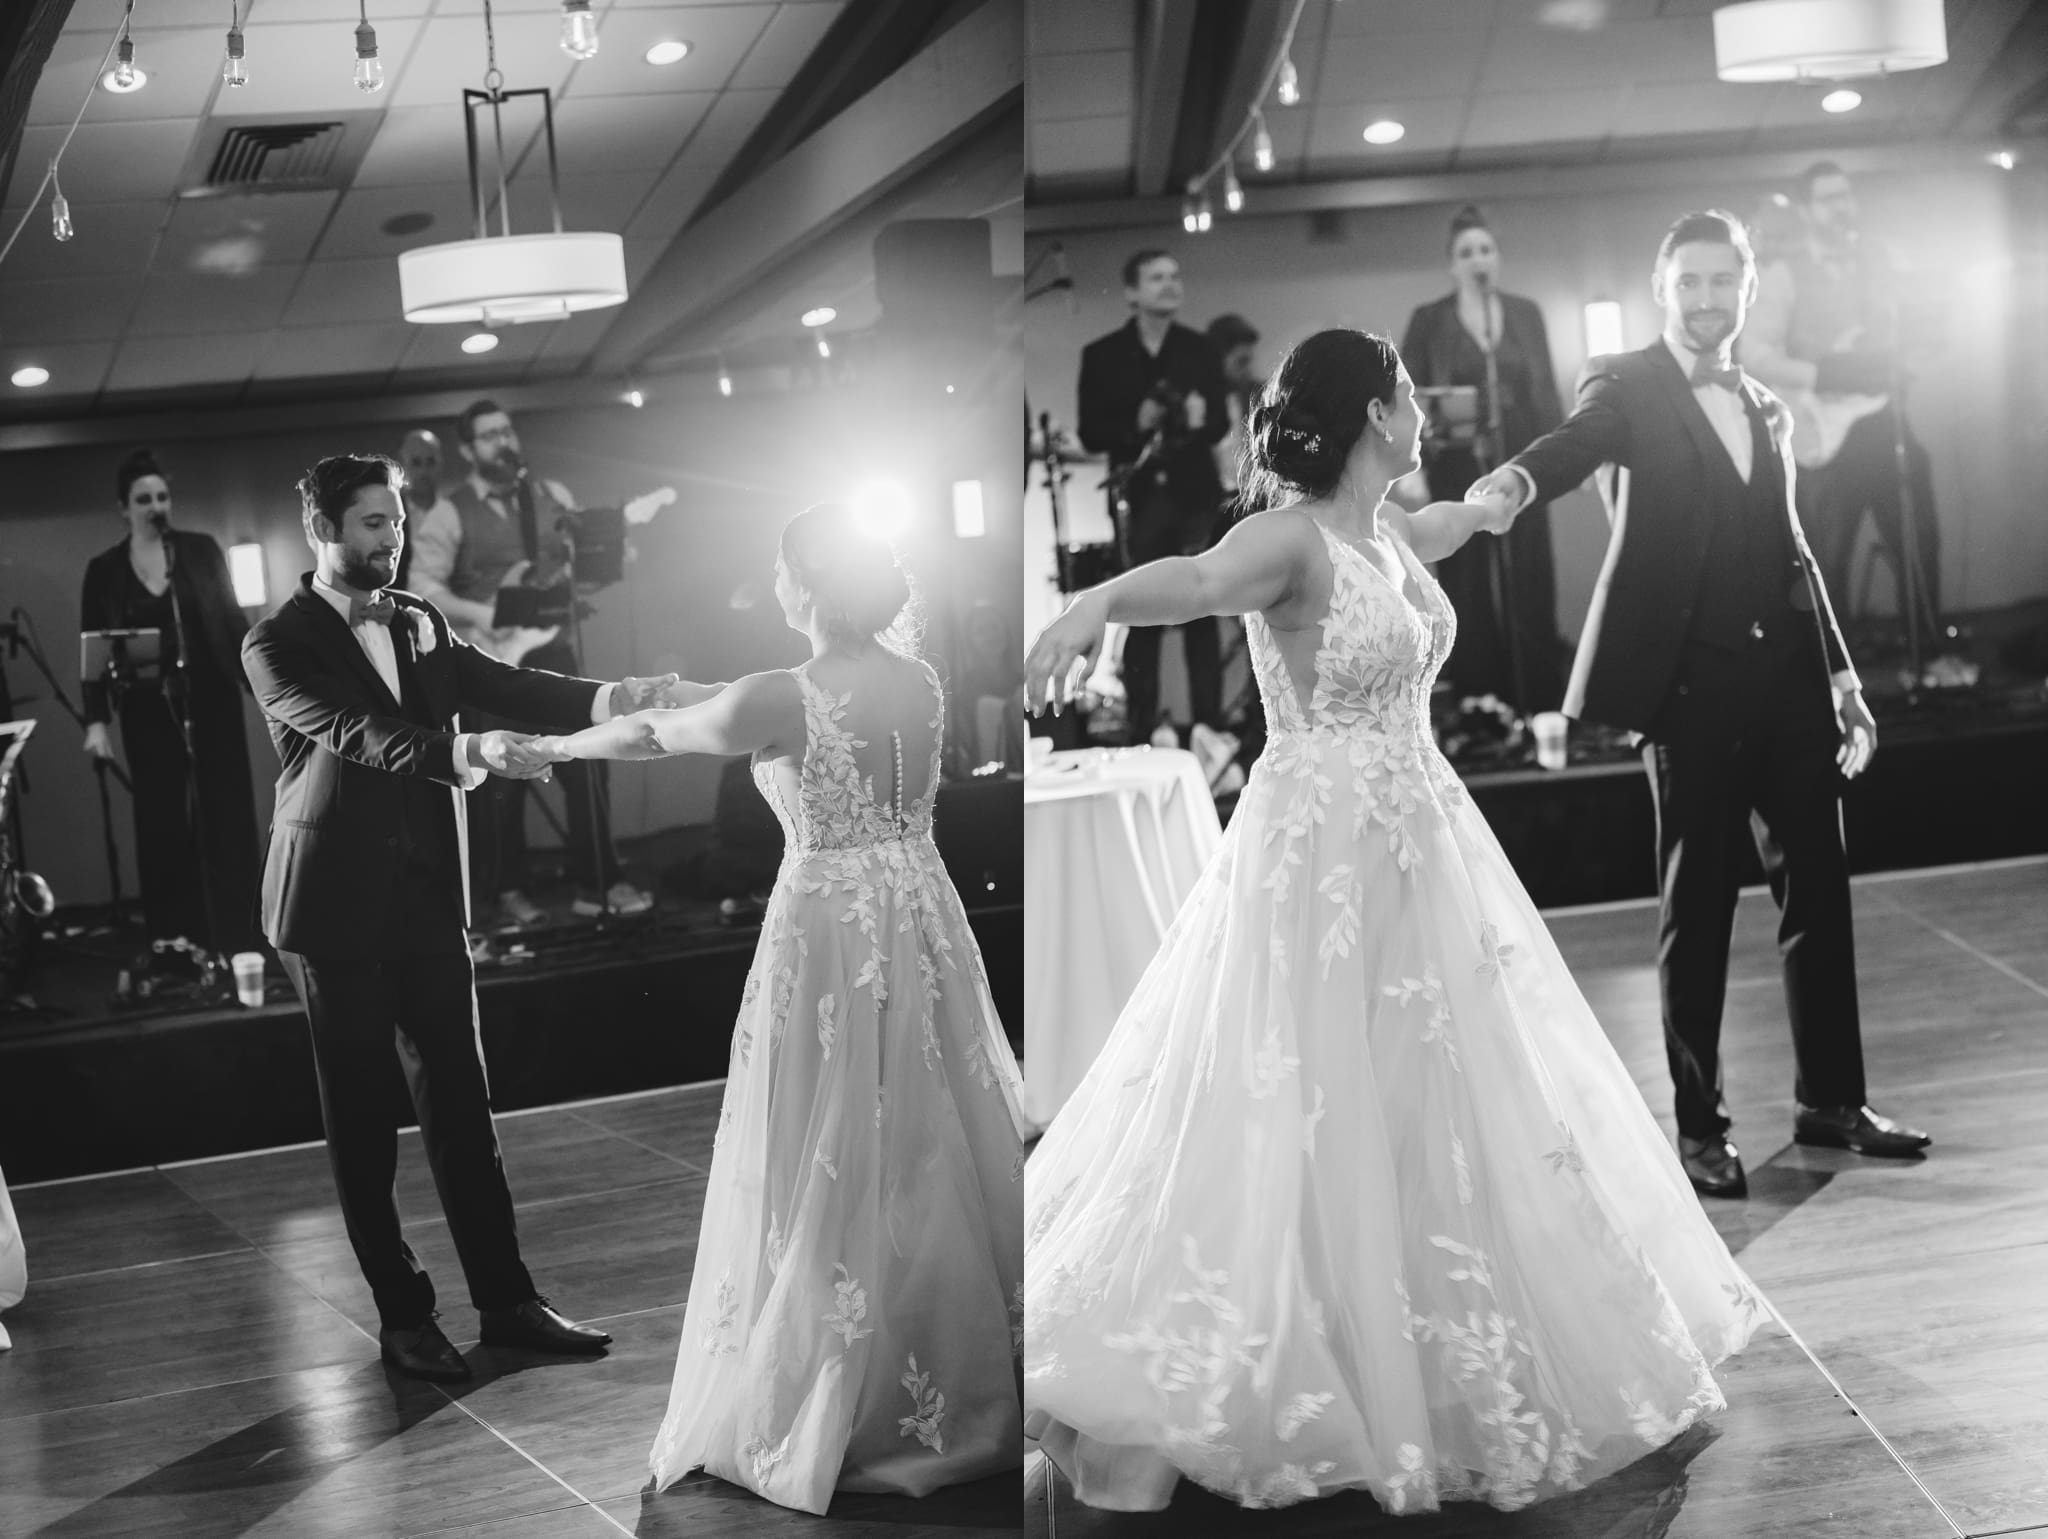 dancing photos for wedding reception